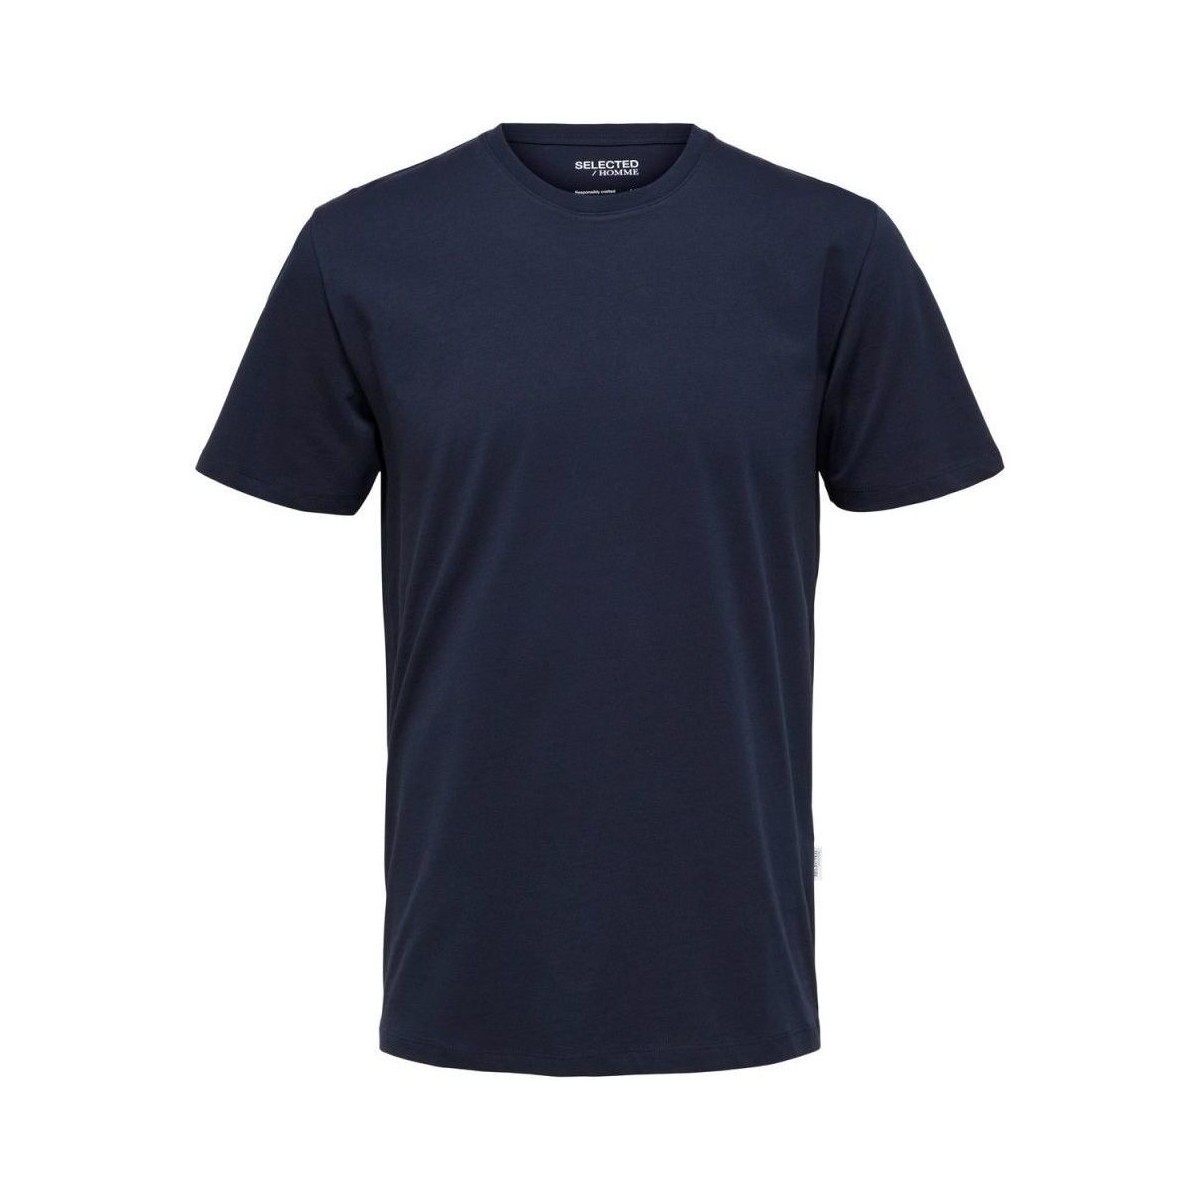 Vêtements Homme T-shirts & Polos Selected 16087842 HASPEN-NAVY BLAZER Bleu